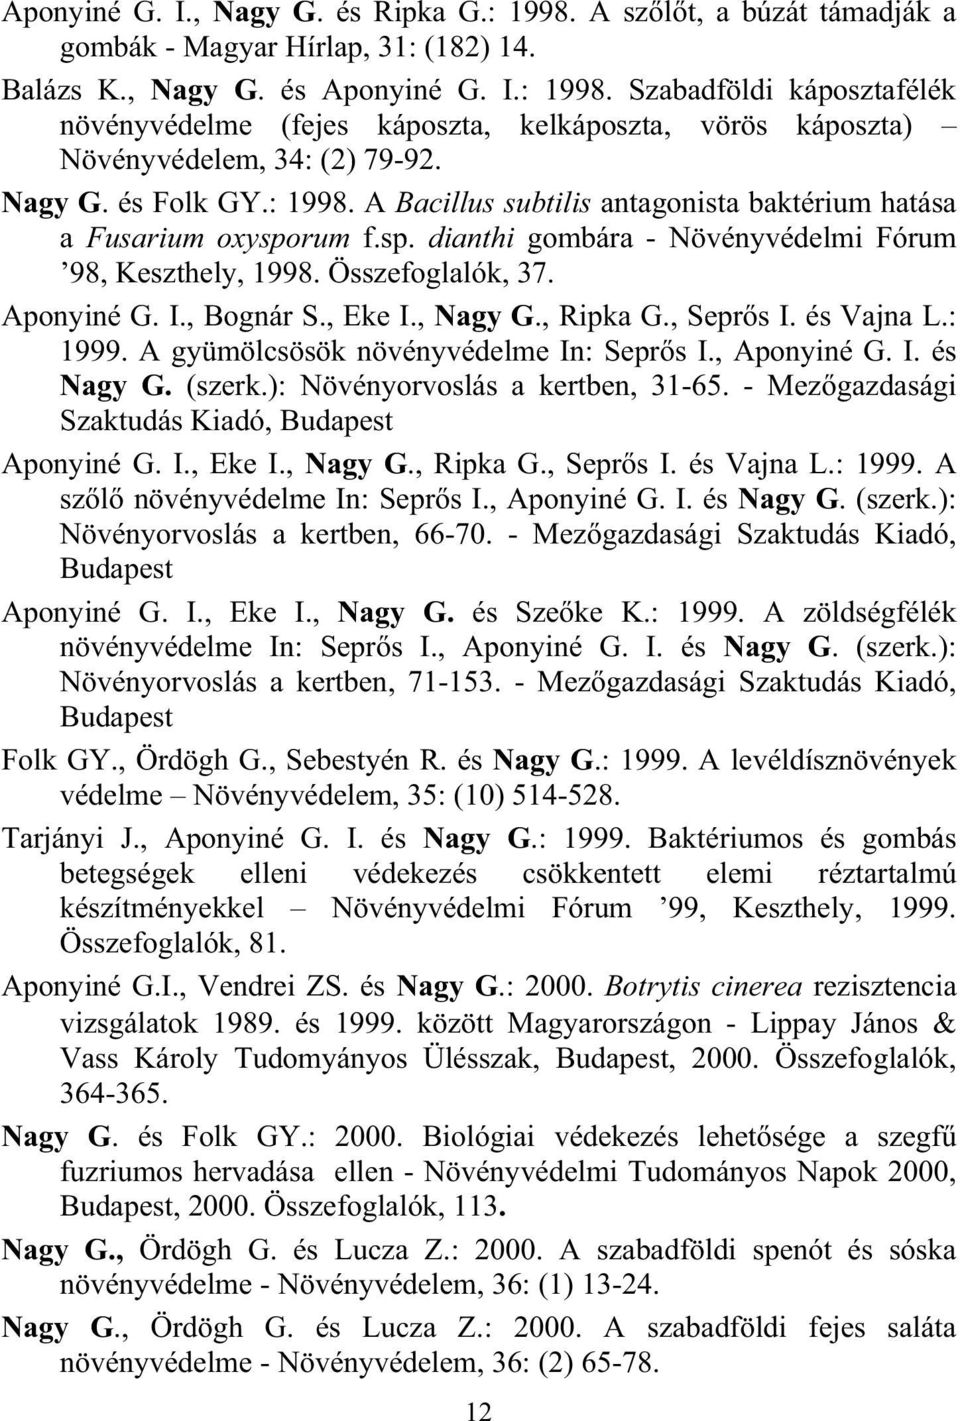 , Bognár S., Eke I., Nagy G., Ripka G., Sepr s I. és Vajna L.: 1999. A gyümölcsösök növényvédelme In: Sepr s I., Aponyiné G. I. és Nagy G. (szerk.): Növényorvoslás a kertben, 31-65.